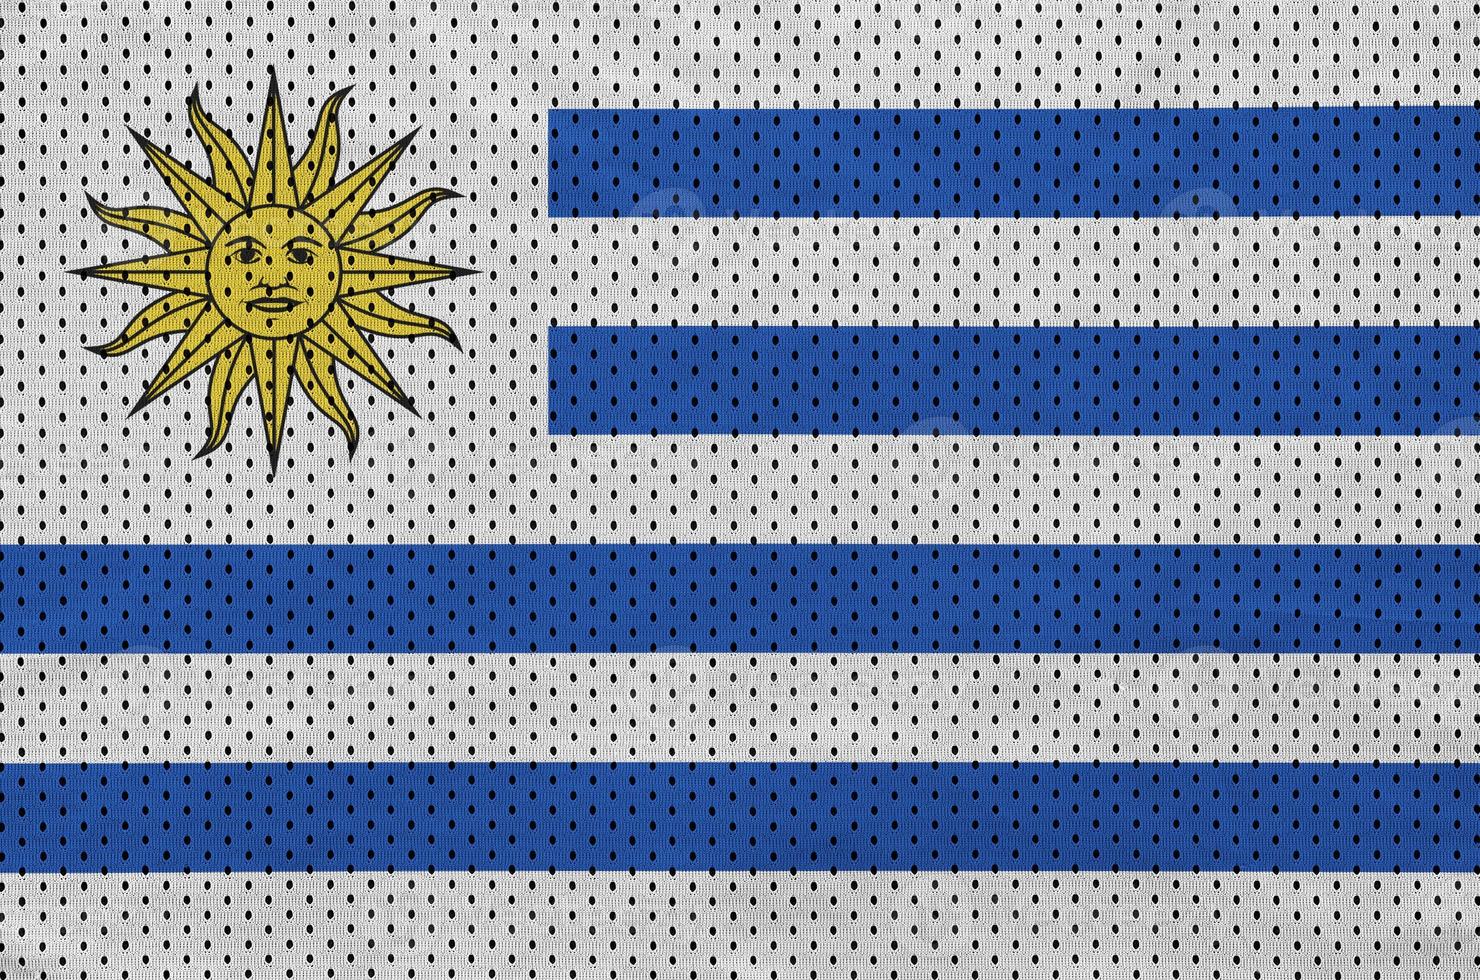 bandera de uruguay impresa en una tela de malla de ropa deportiva de nailon de poliéster foto